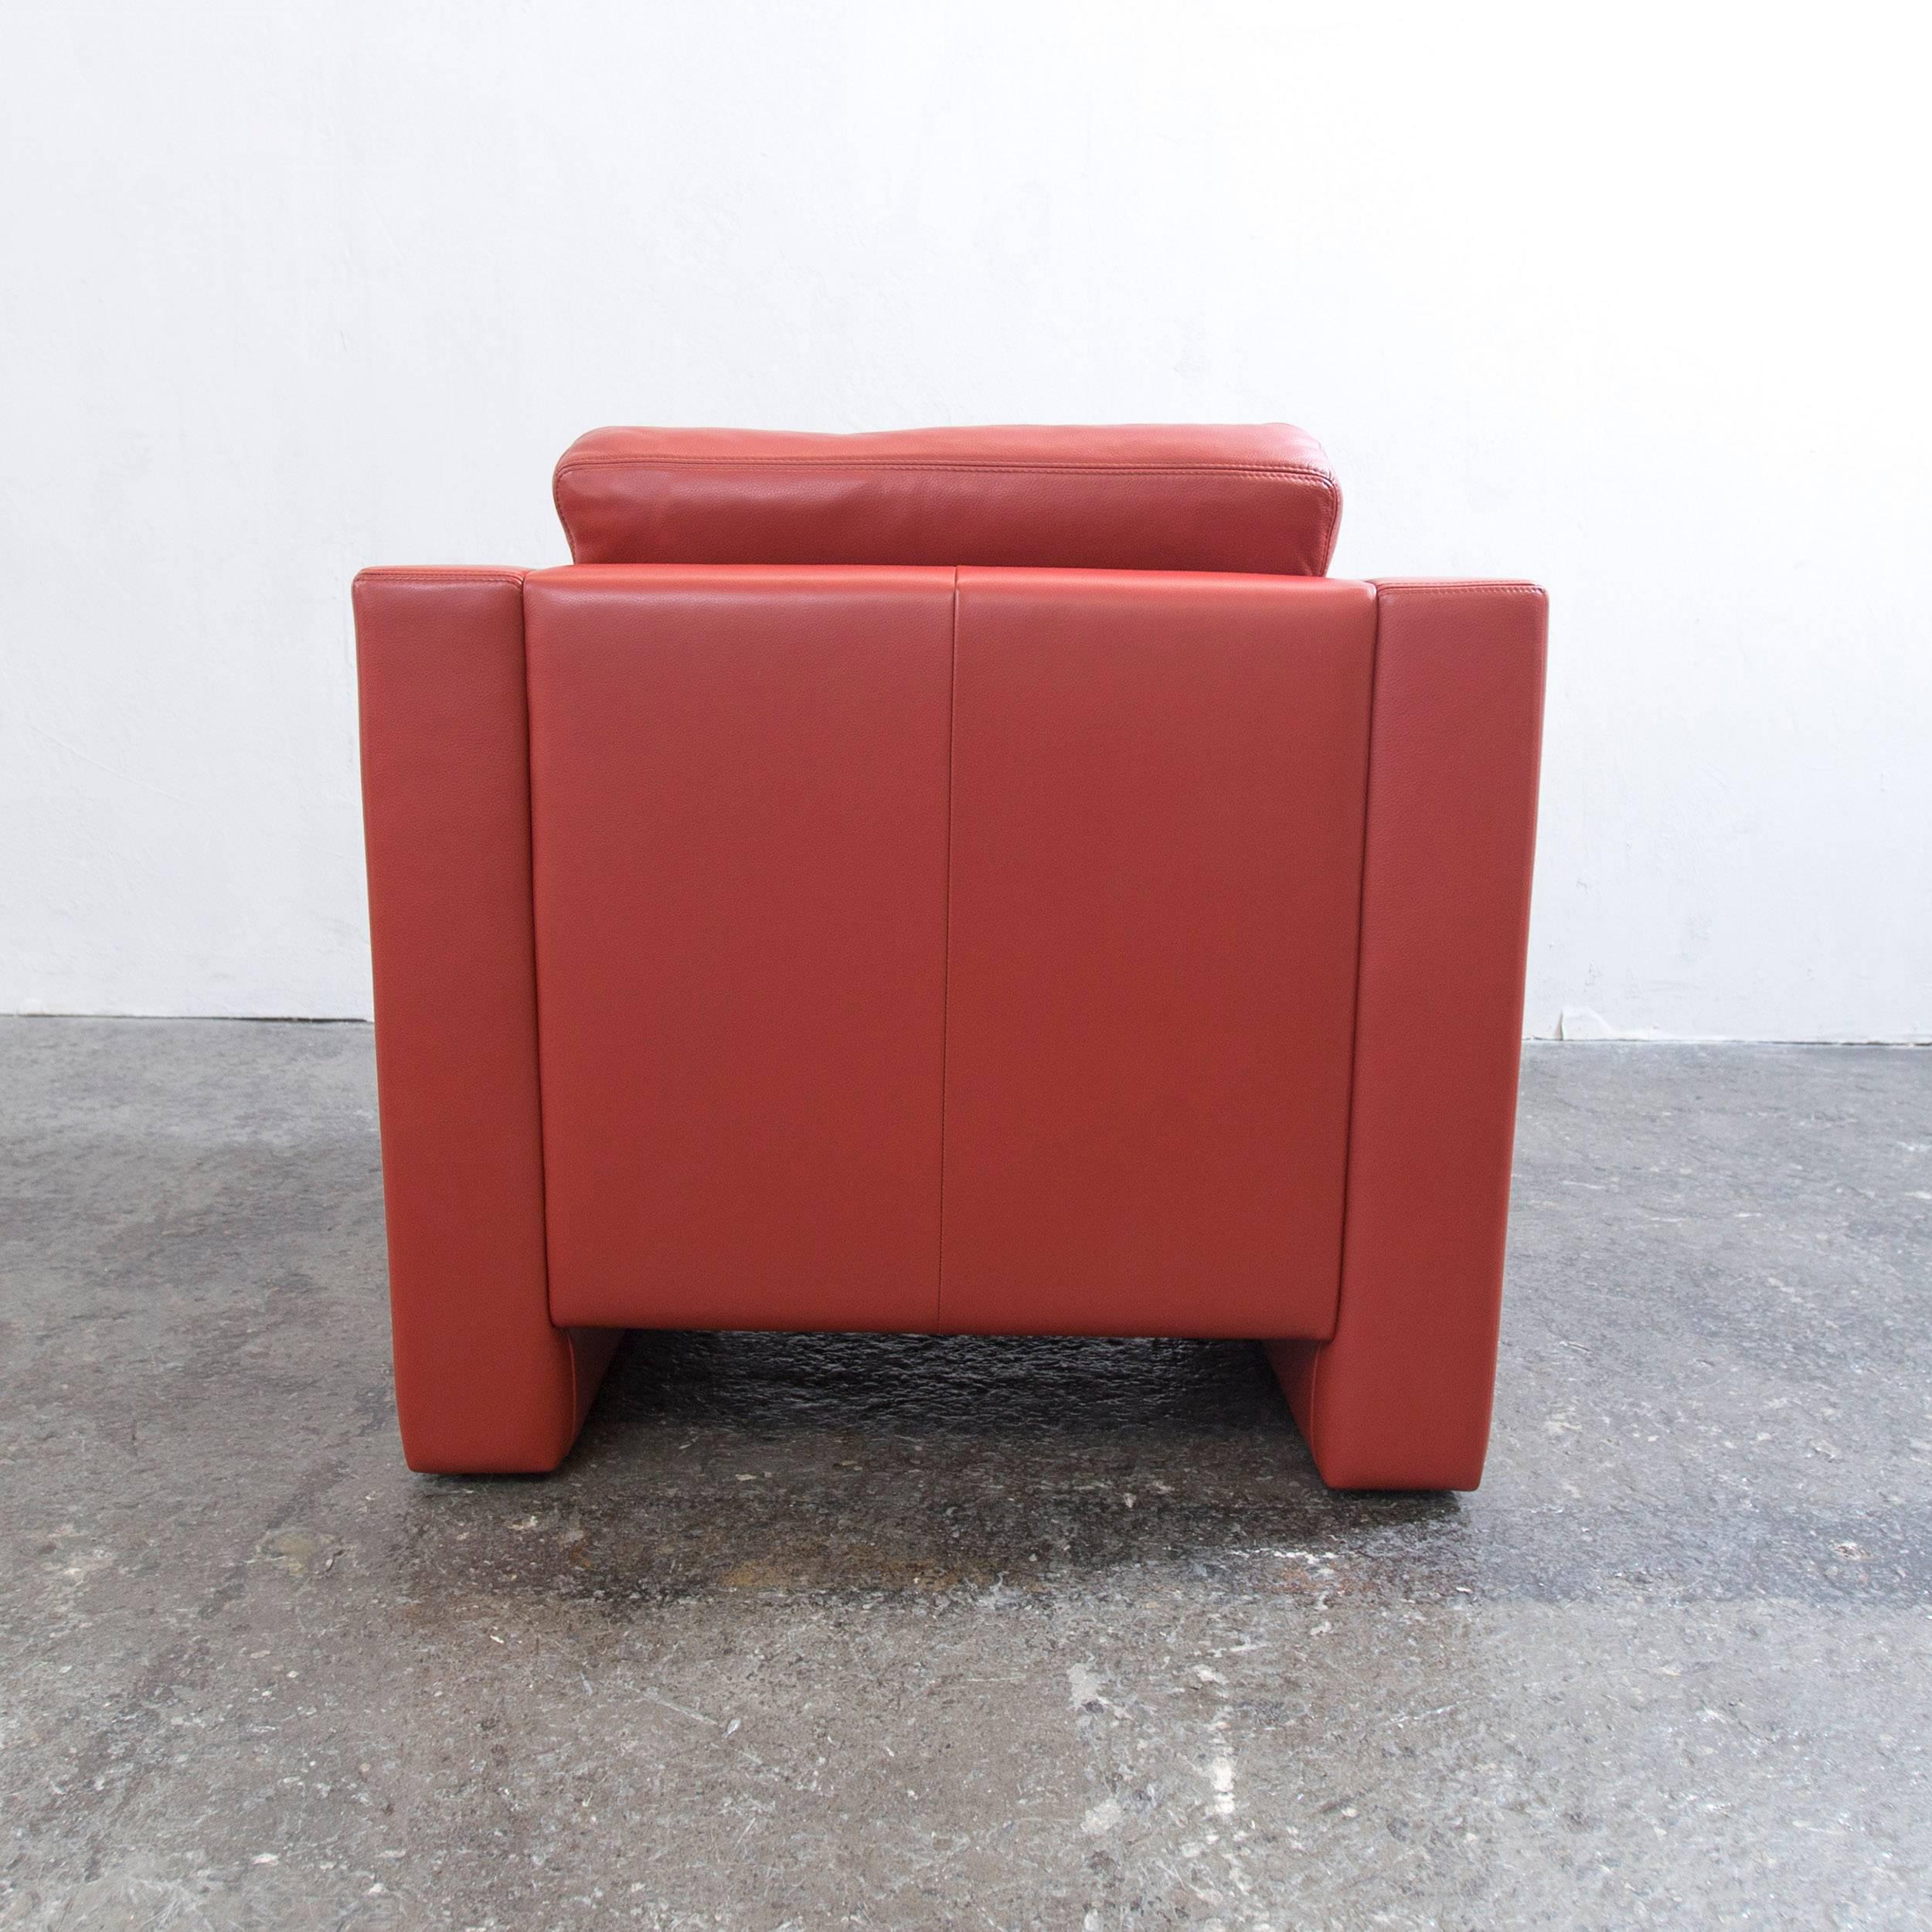 Erpo Designer Armchair Orange Red One Seat Couch, Modern 3